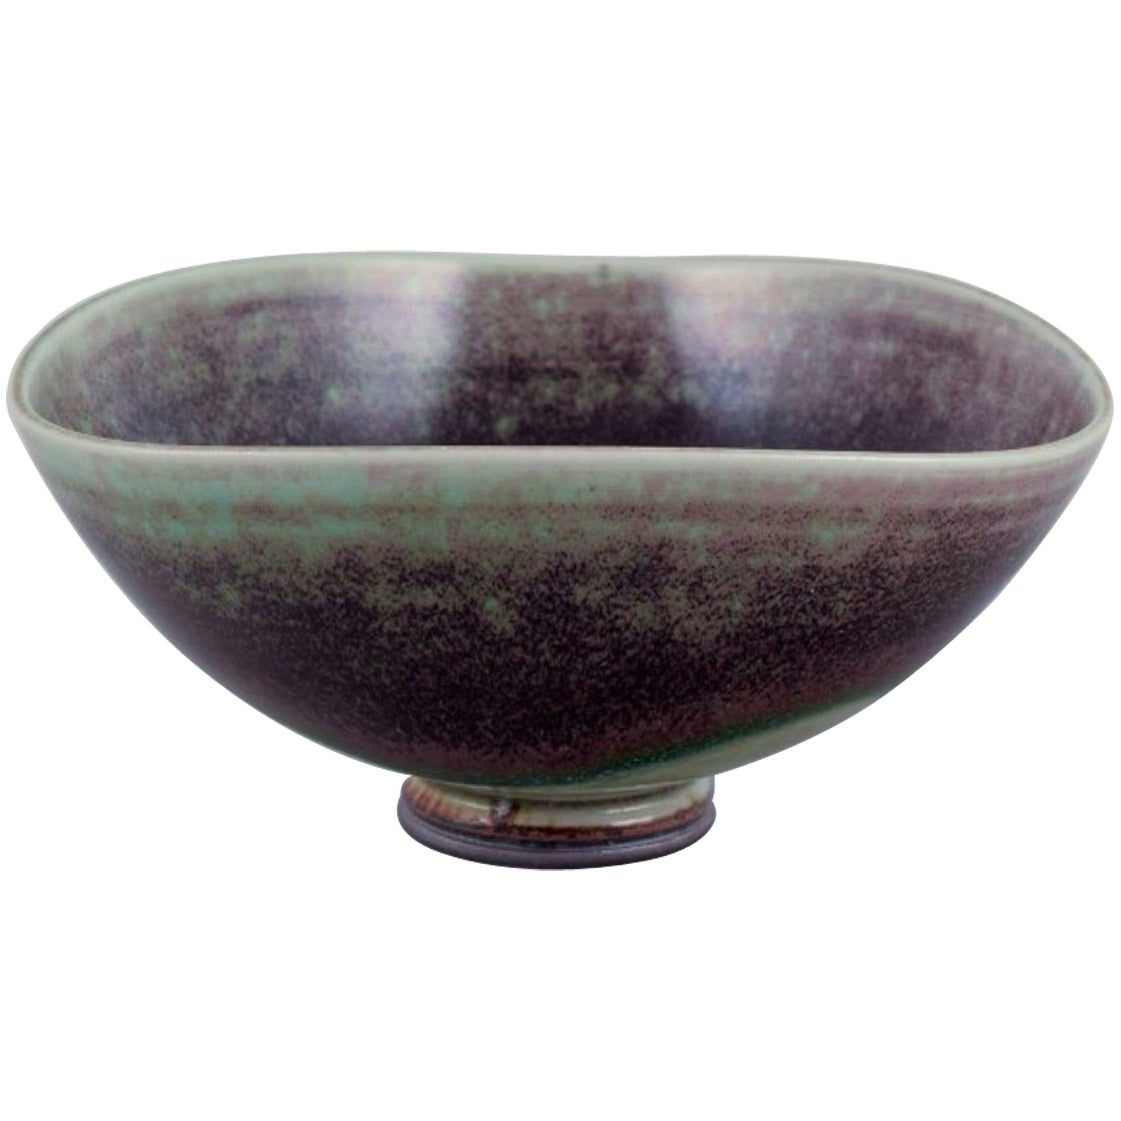 Berndt Friberg for Gustavsberg Studio. Unique ceramic bowl in Aniara glaze.